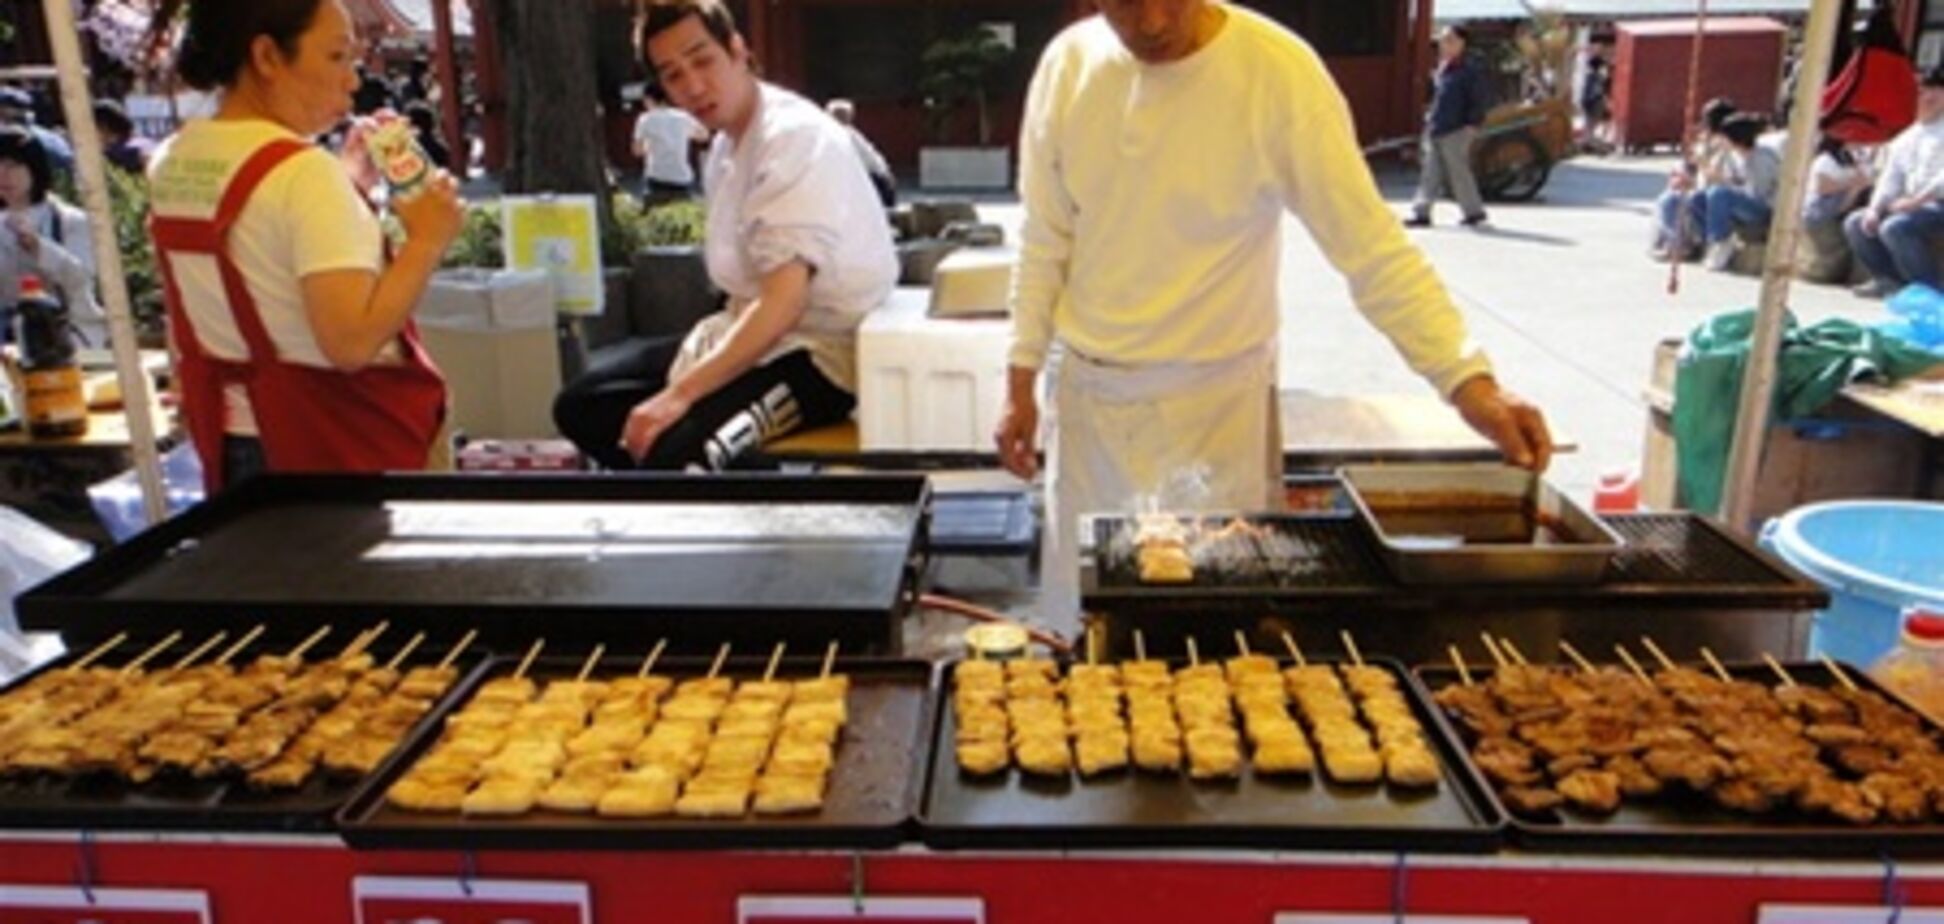 М'ясо, заражене радіацією, продавалося в 10 префектурах Японії